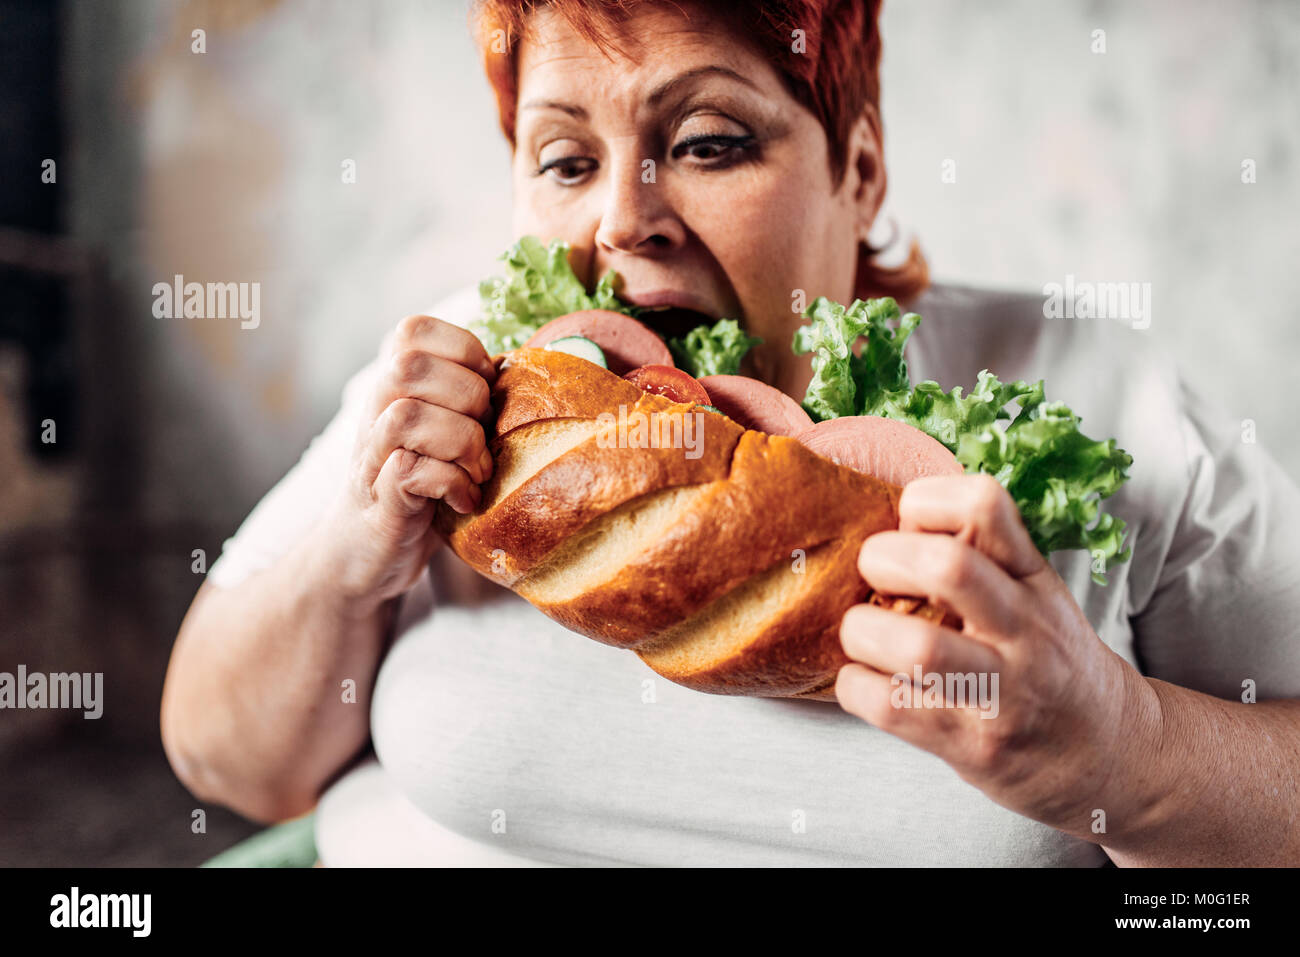 41+ Fette frau bilder lustig , Fette Frau isst Sandwich, Übergewicht, bulimic. Ungesunde Lebensweise